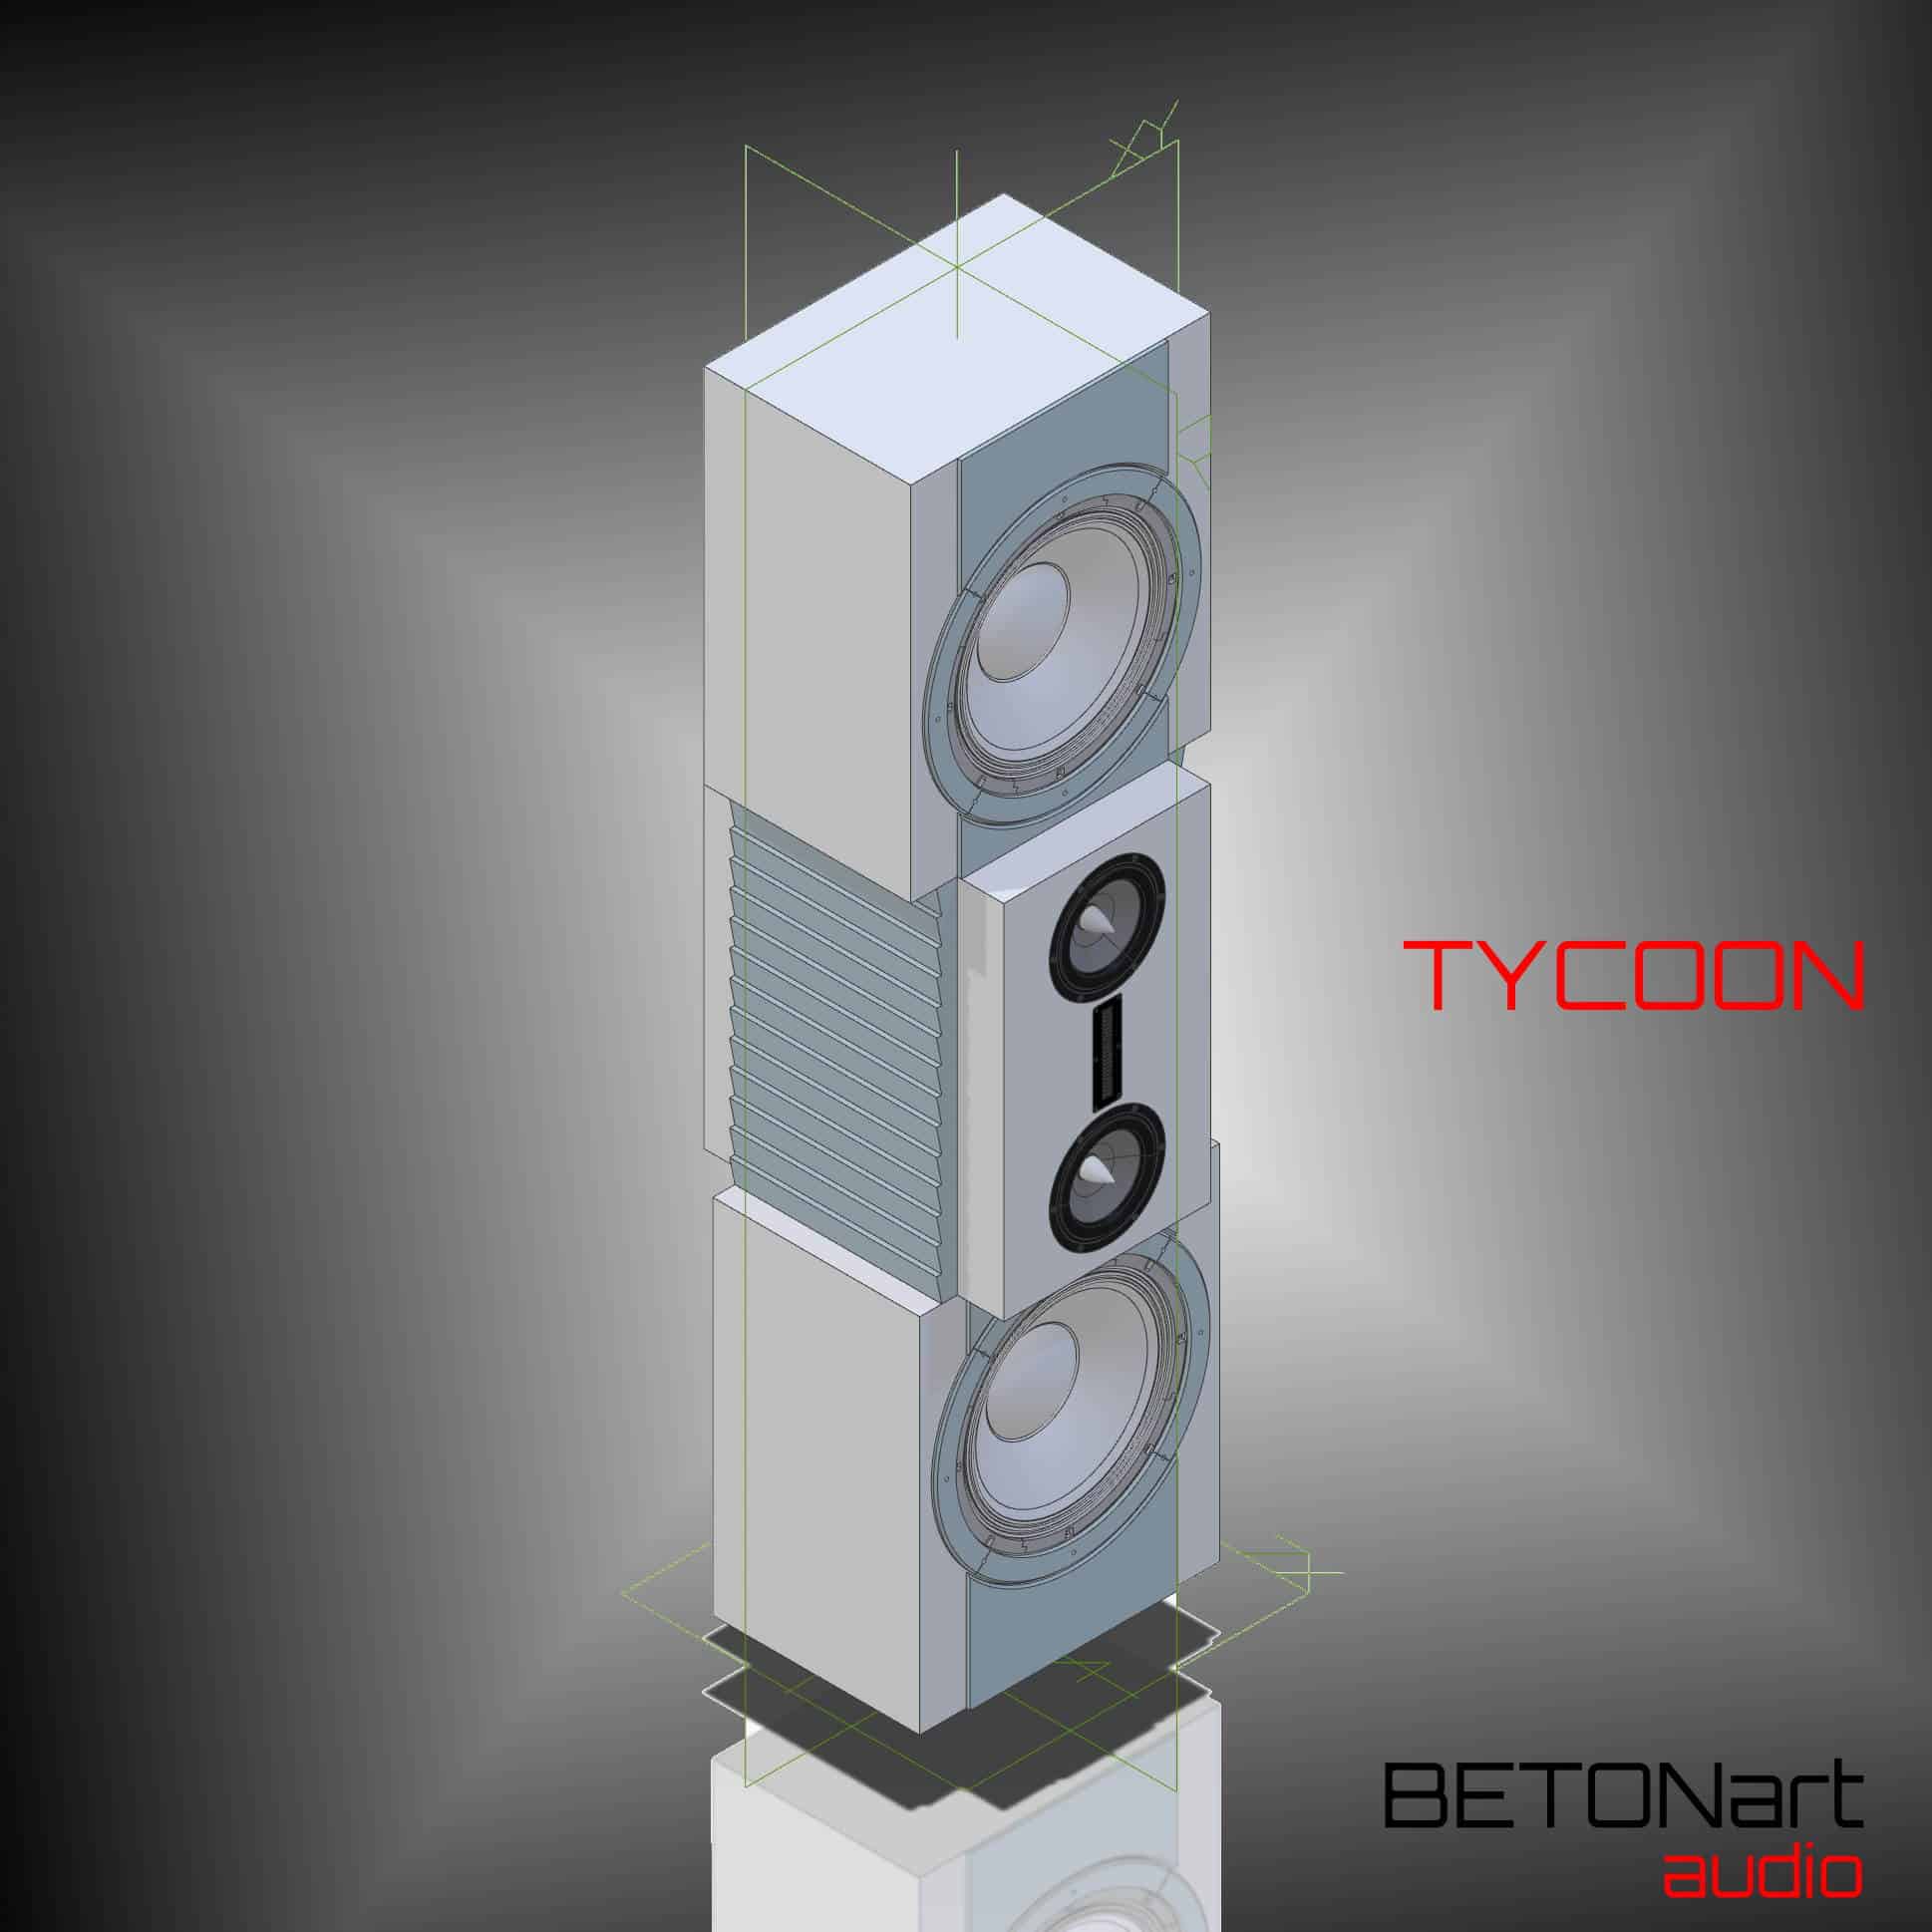 TYCOON Ultra Masterpiece from BETONart-audio